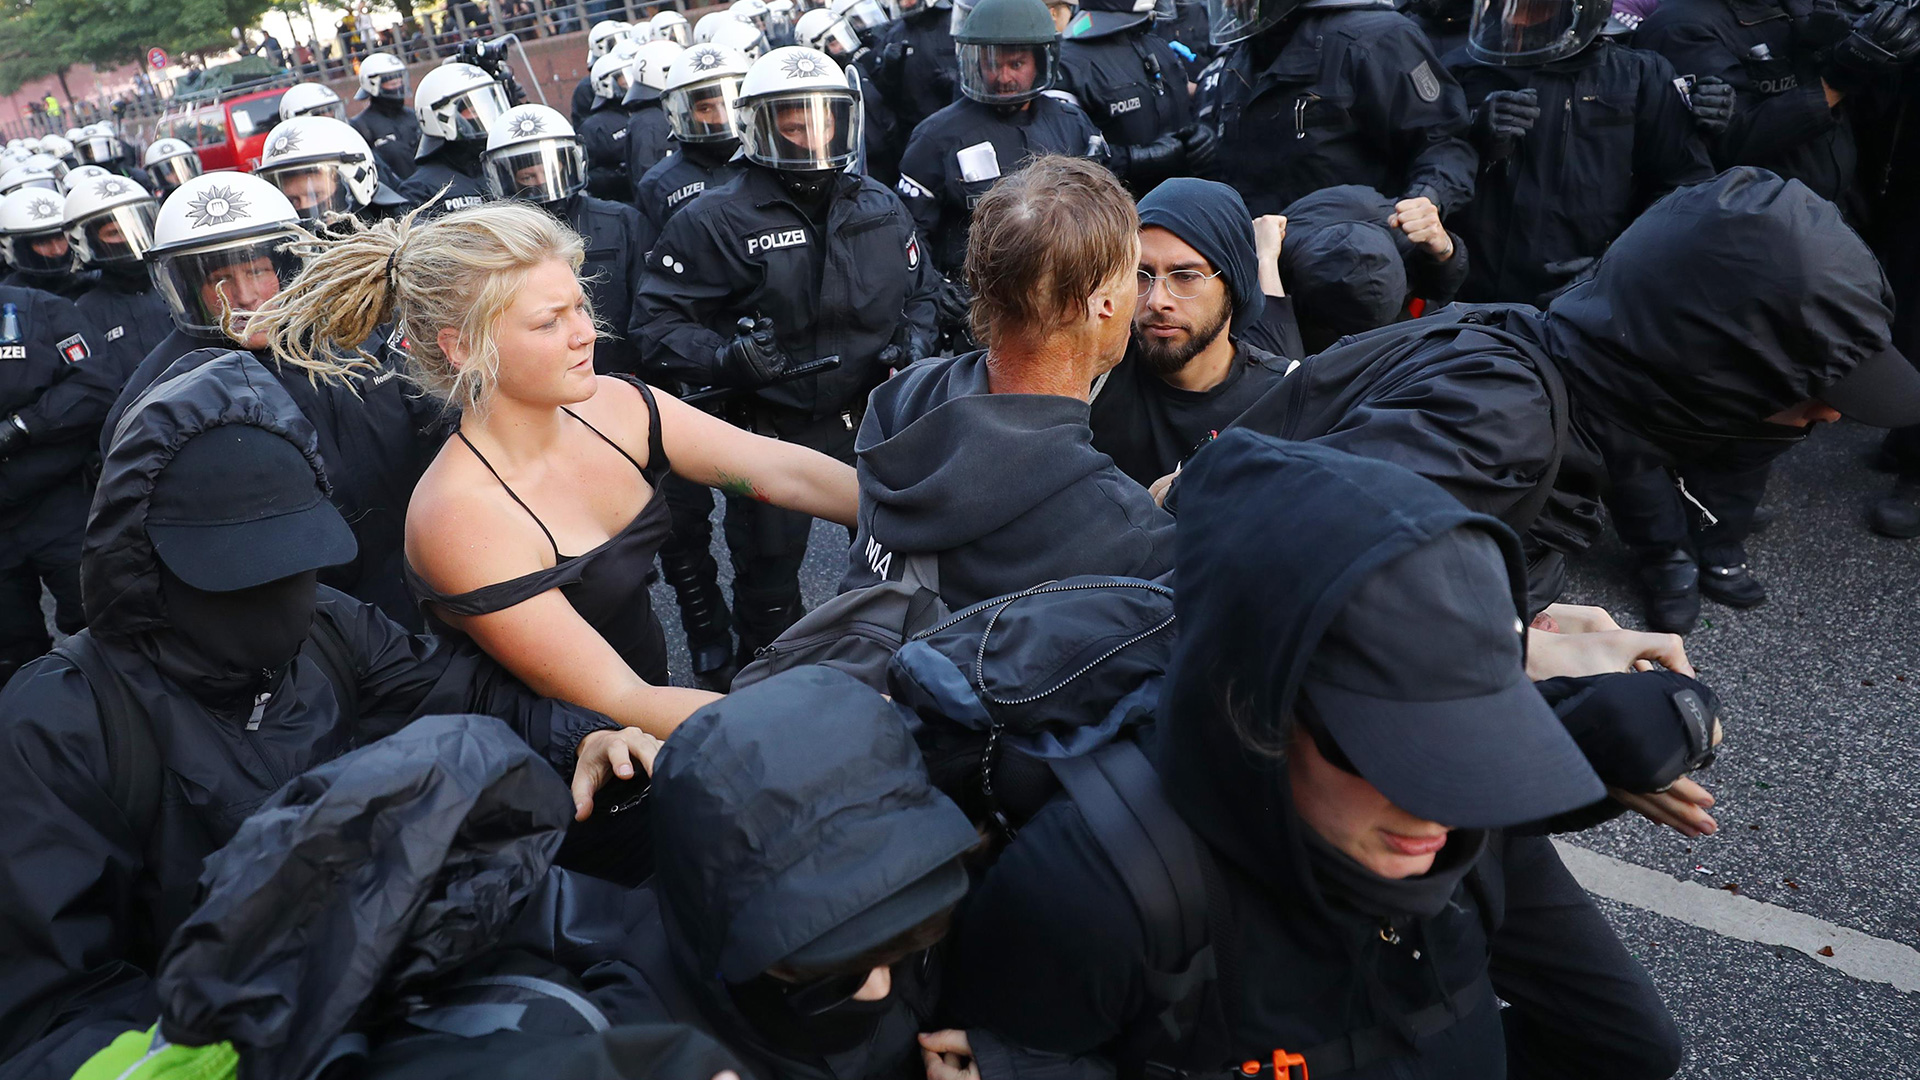 La Policía y los manifestantes contra el G20, envueltos en violentos enfrentamientos 1